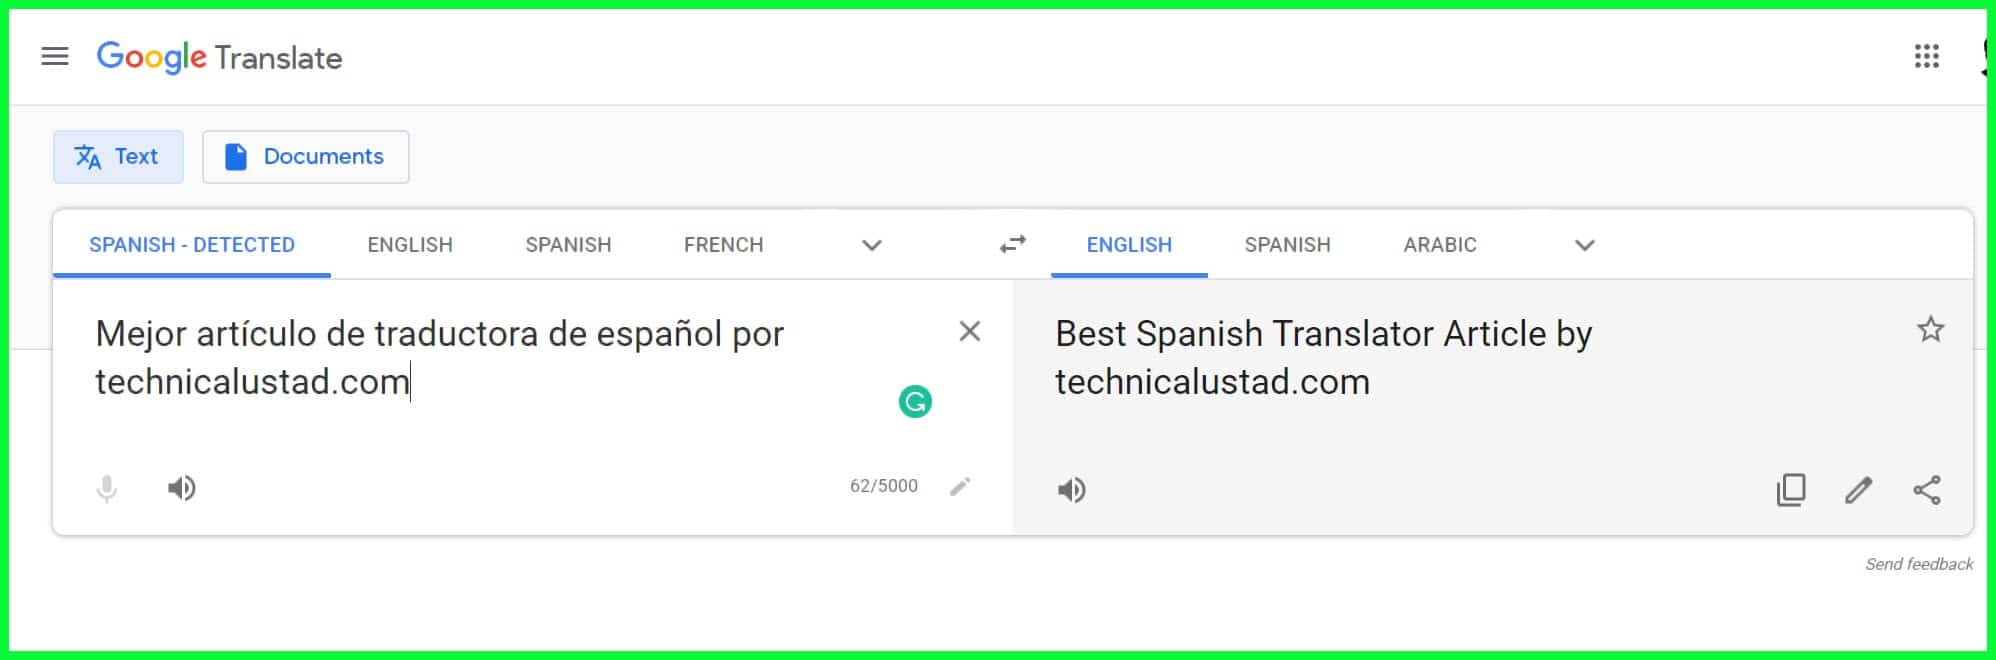 Best Spanish Translator